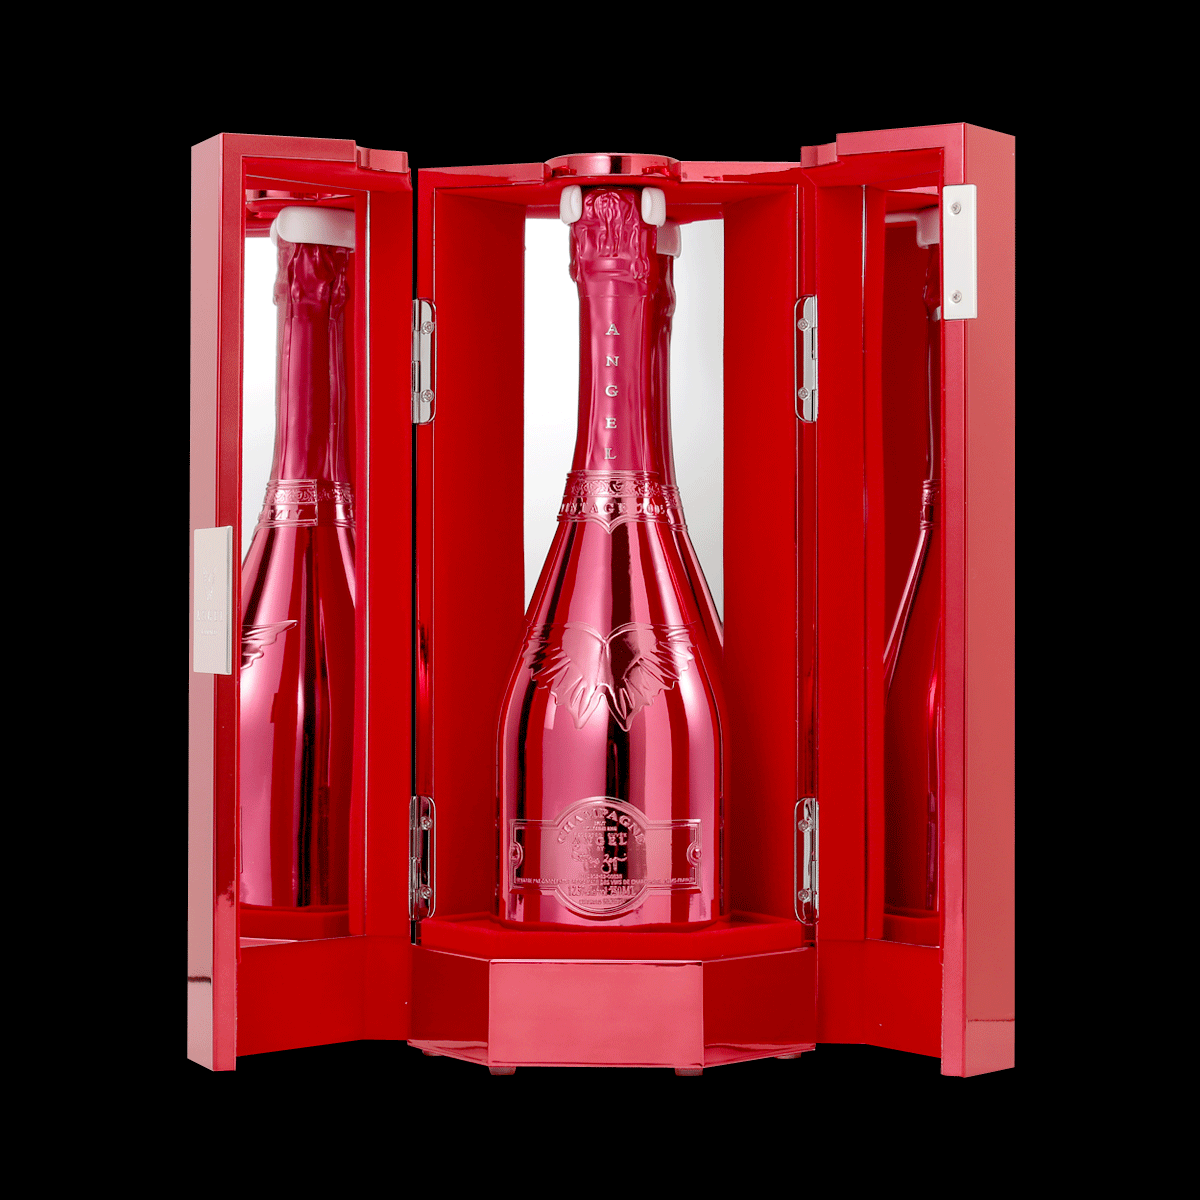 2023年最新海外飲料/酒エンジェル シャンパン ヴィンテージ レッド 豪華ボックス入り 正規品